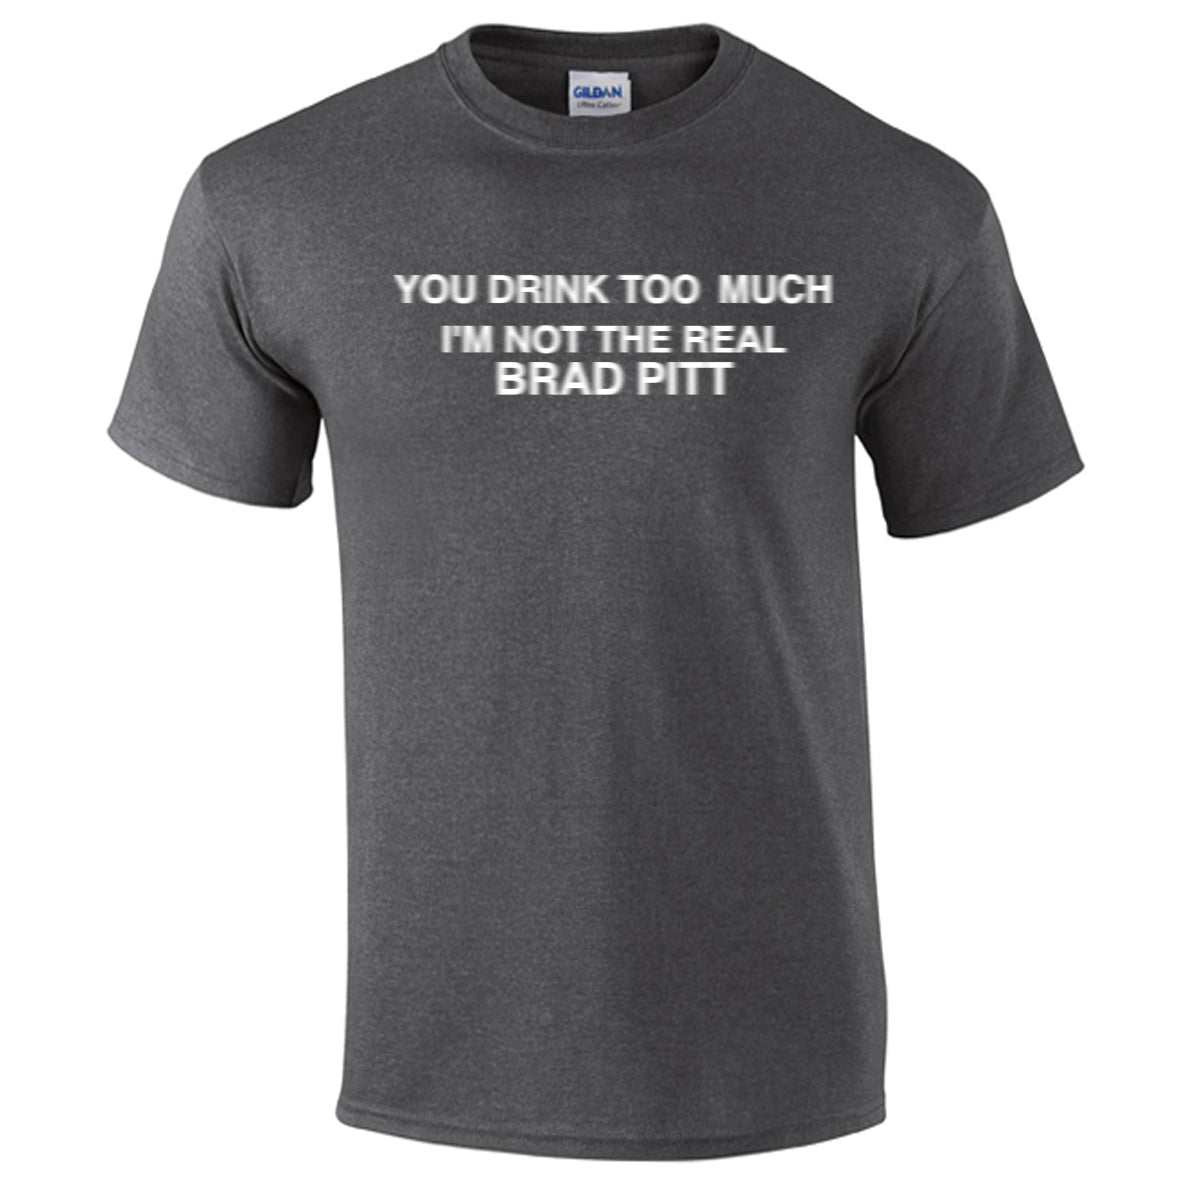 t-shirt not brad